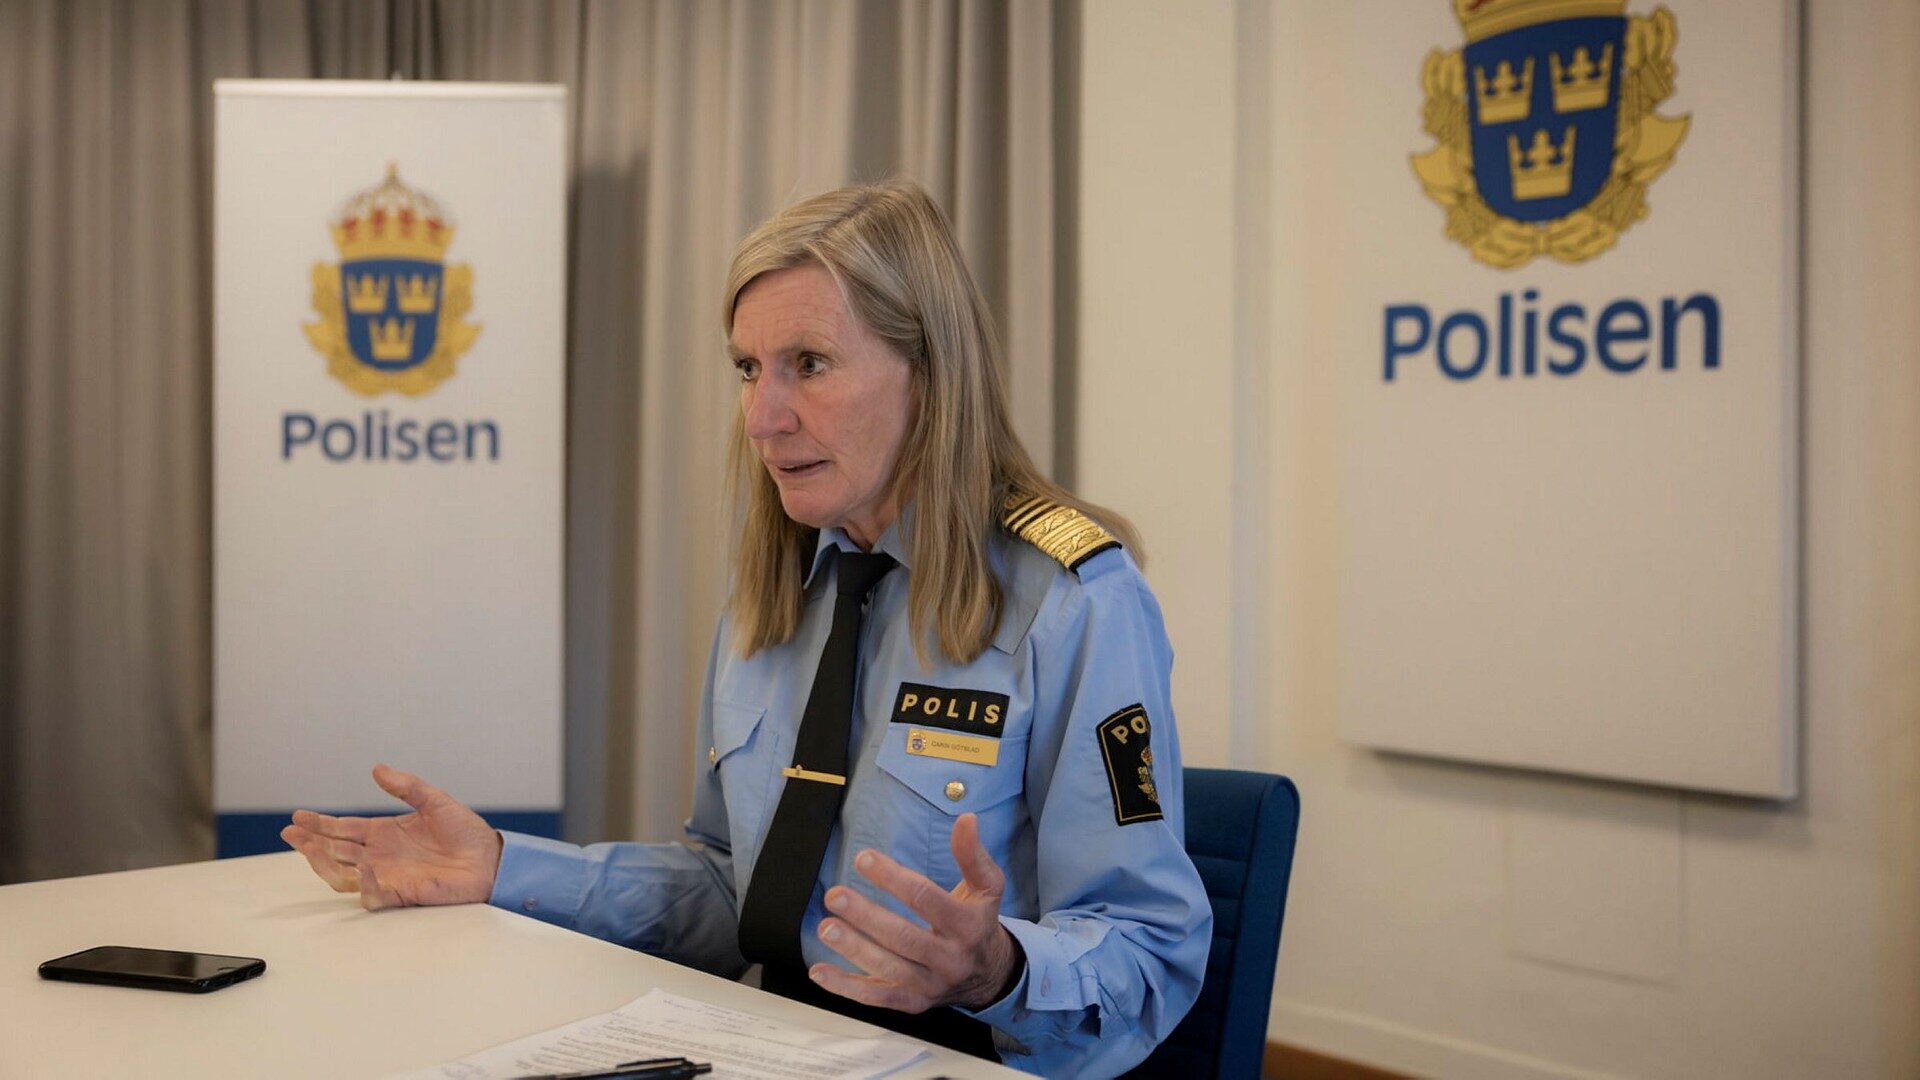 Carin Götblad vill strypa rekryteringen till gängen - Dagens Nyheter